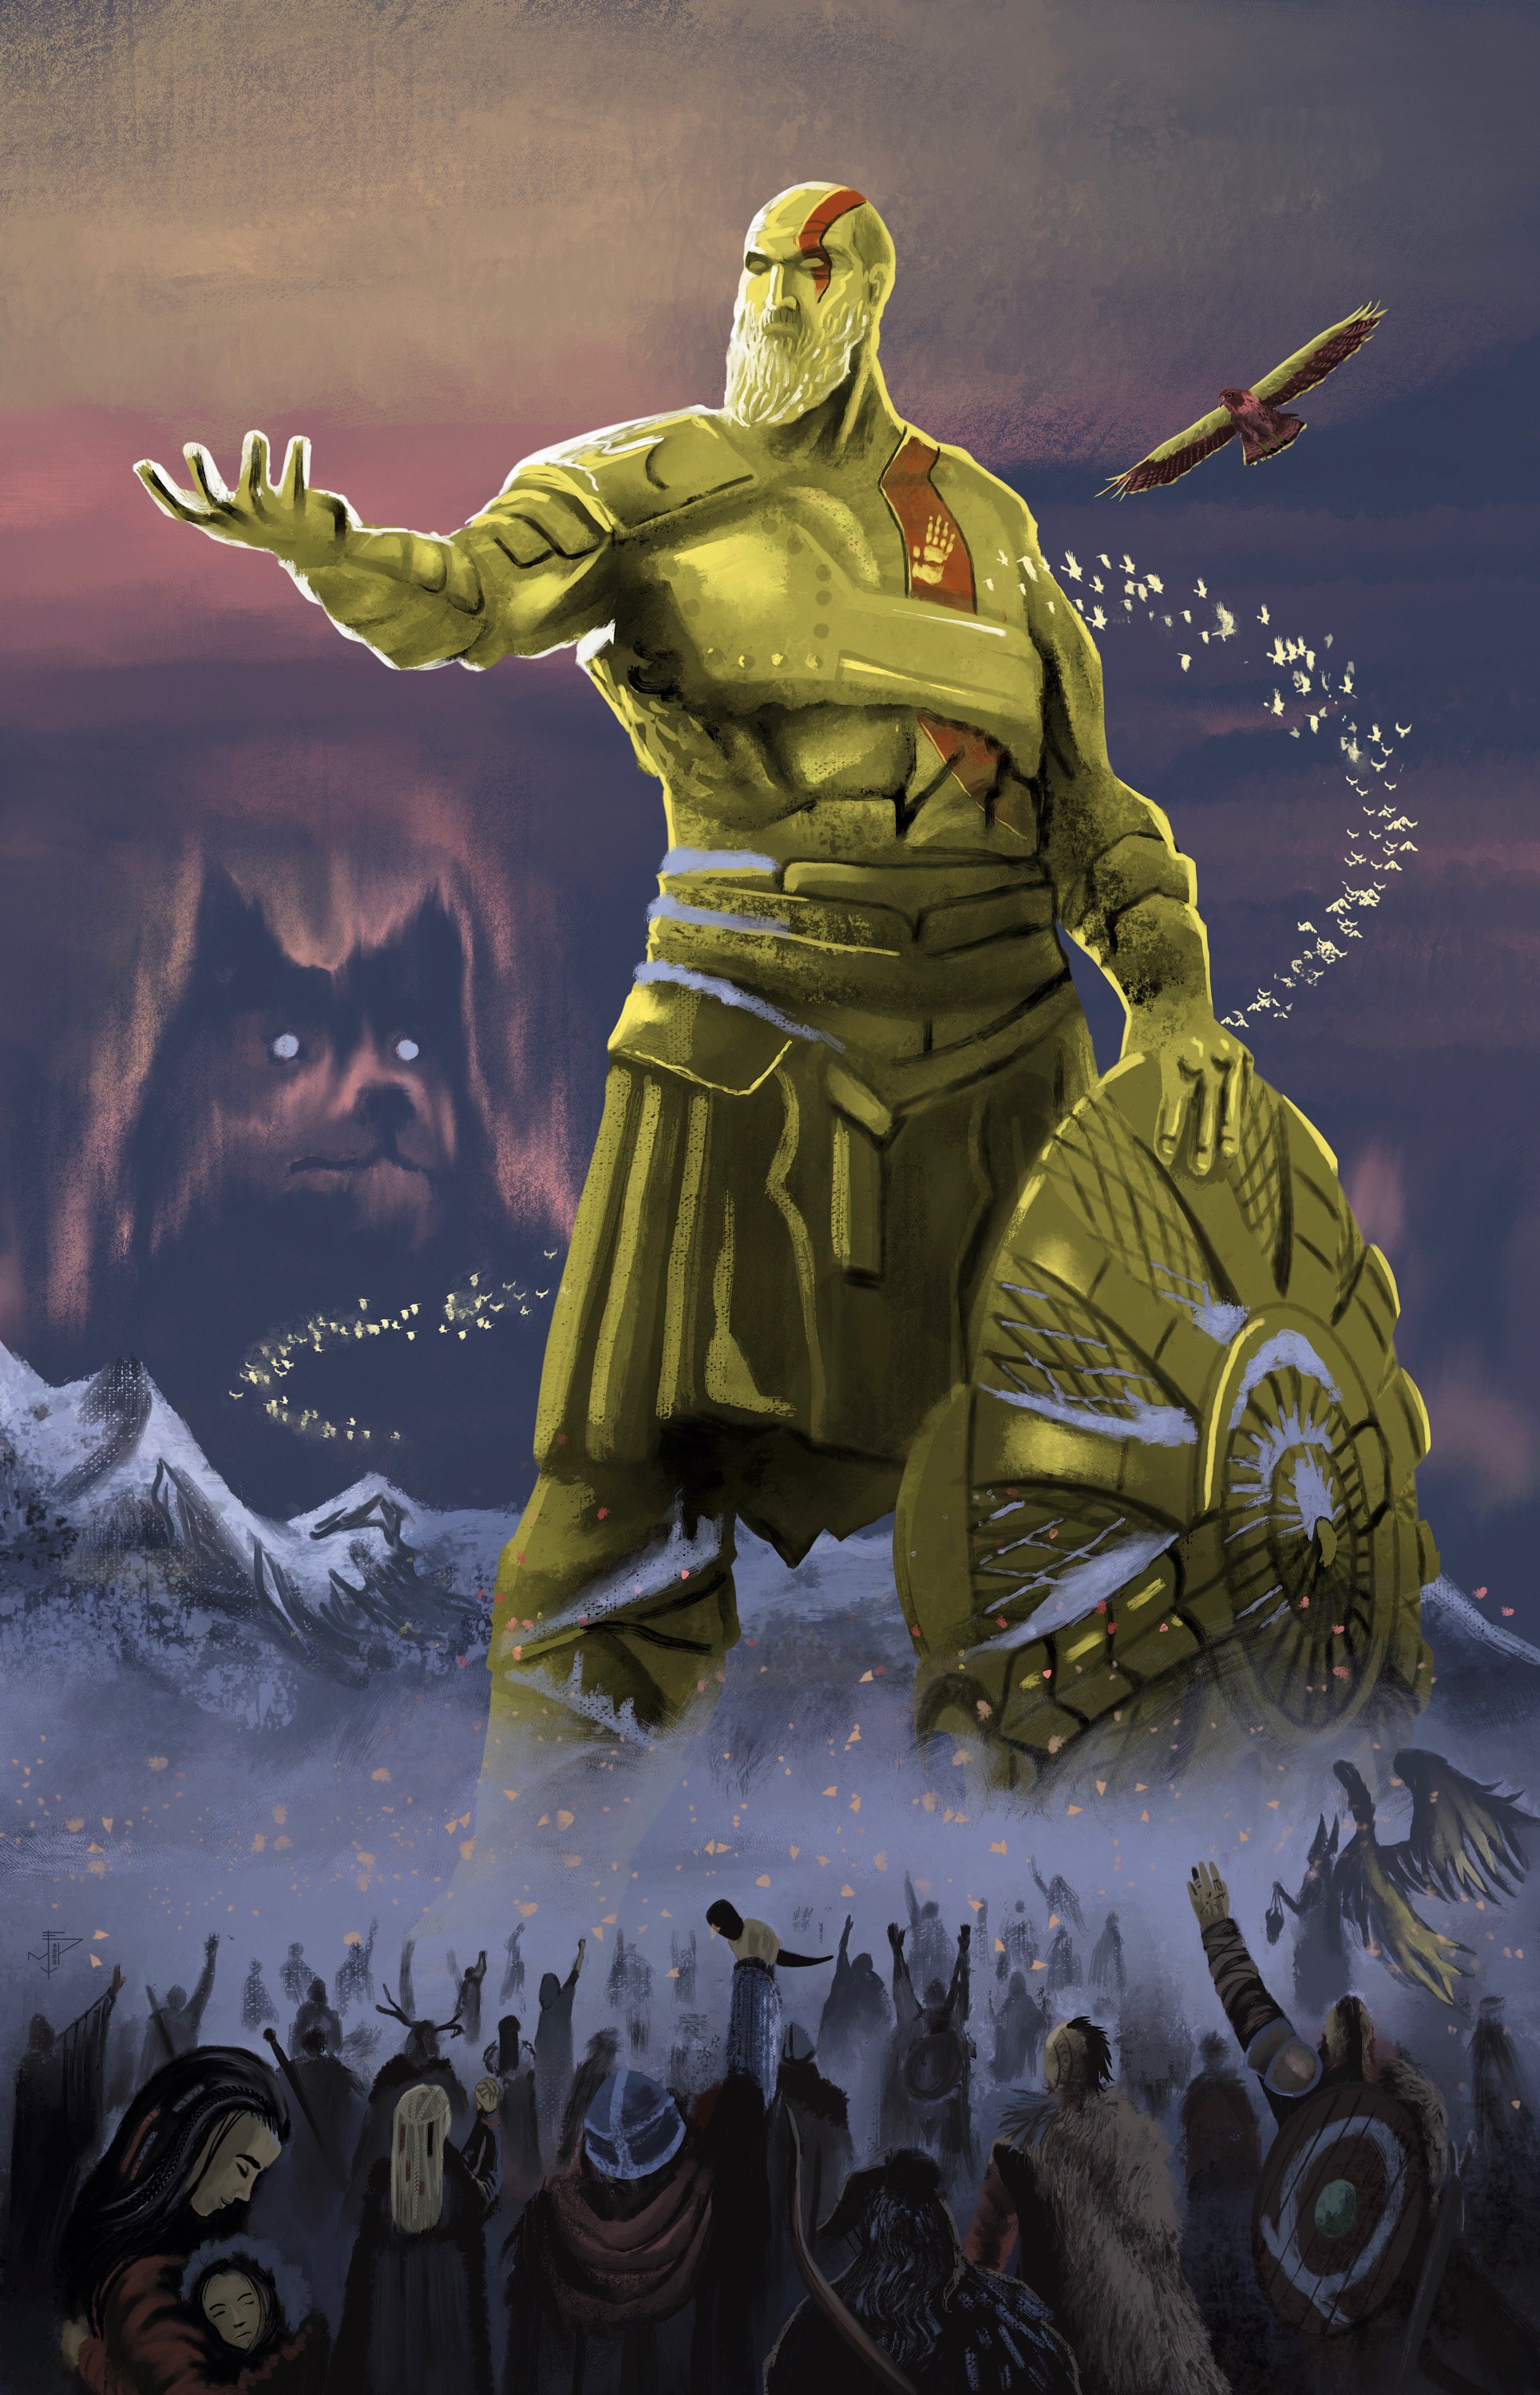 The Art of God War Twitter: "God of War Ragnarok - Fan ❄ Art by emyart15 https://t.co/GBCV2XCsN1" / Twitter